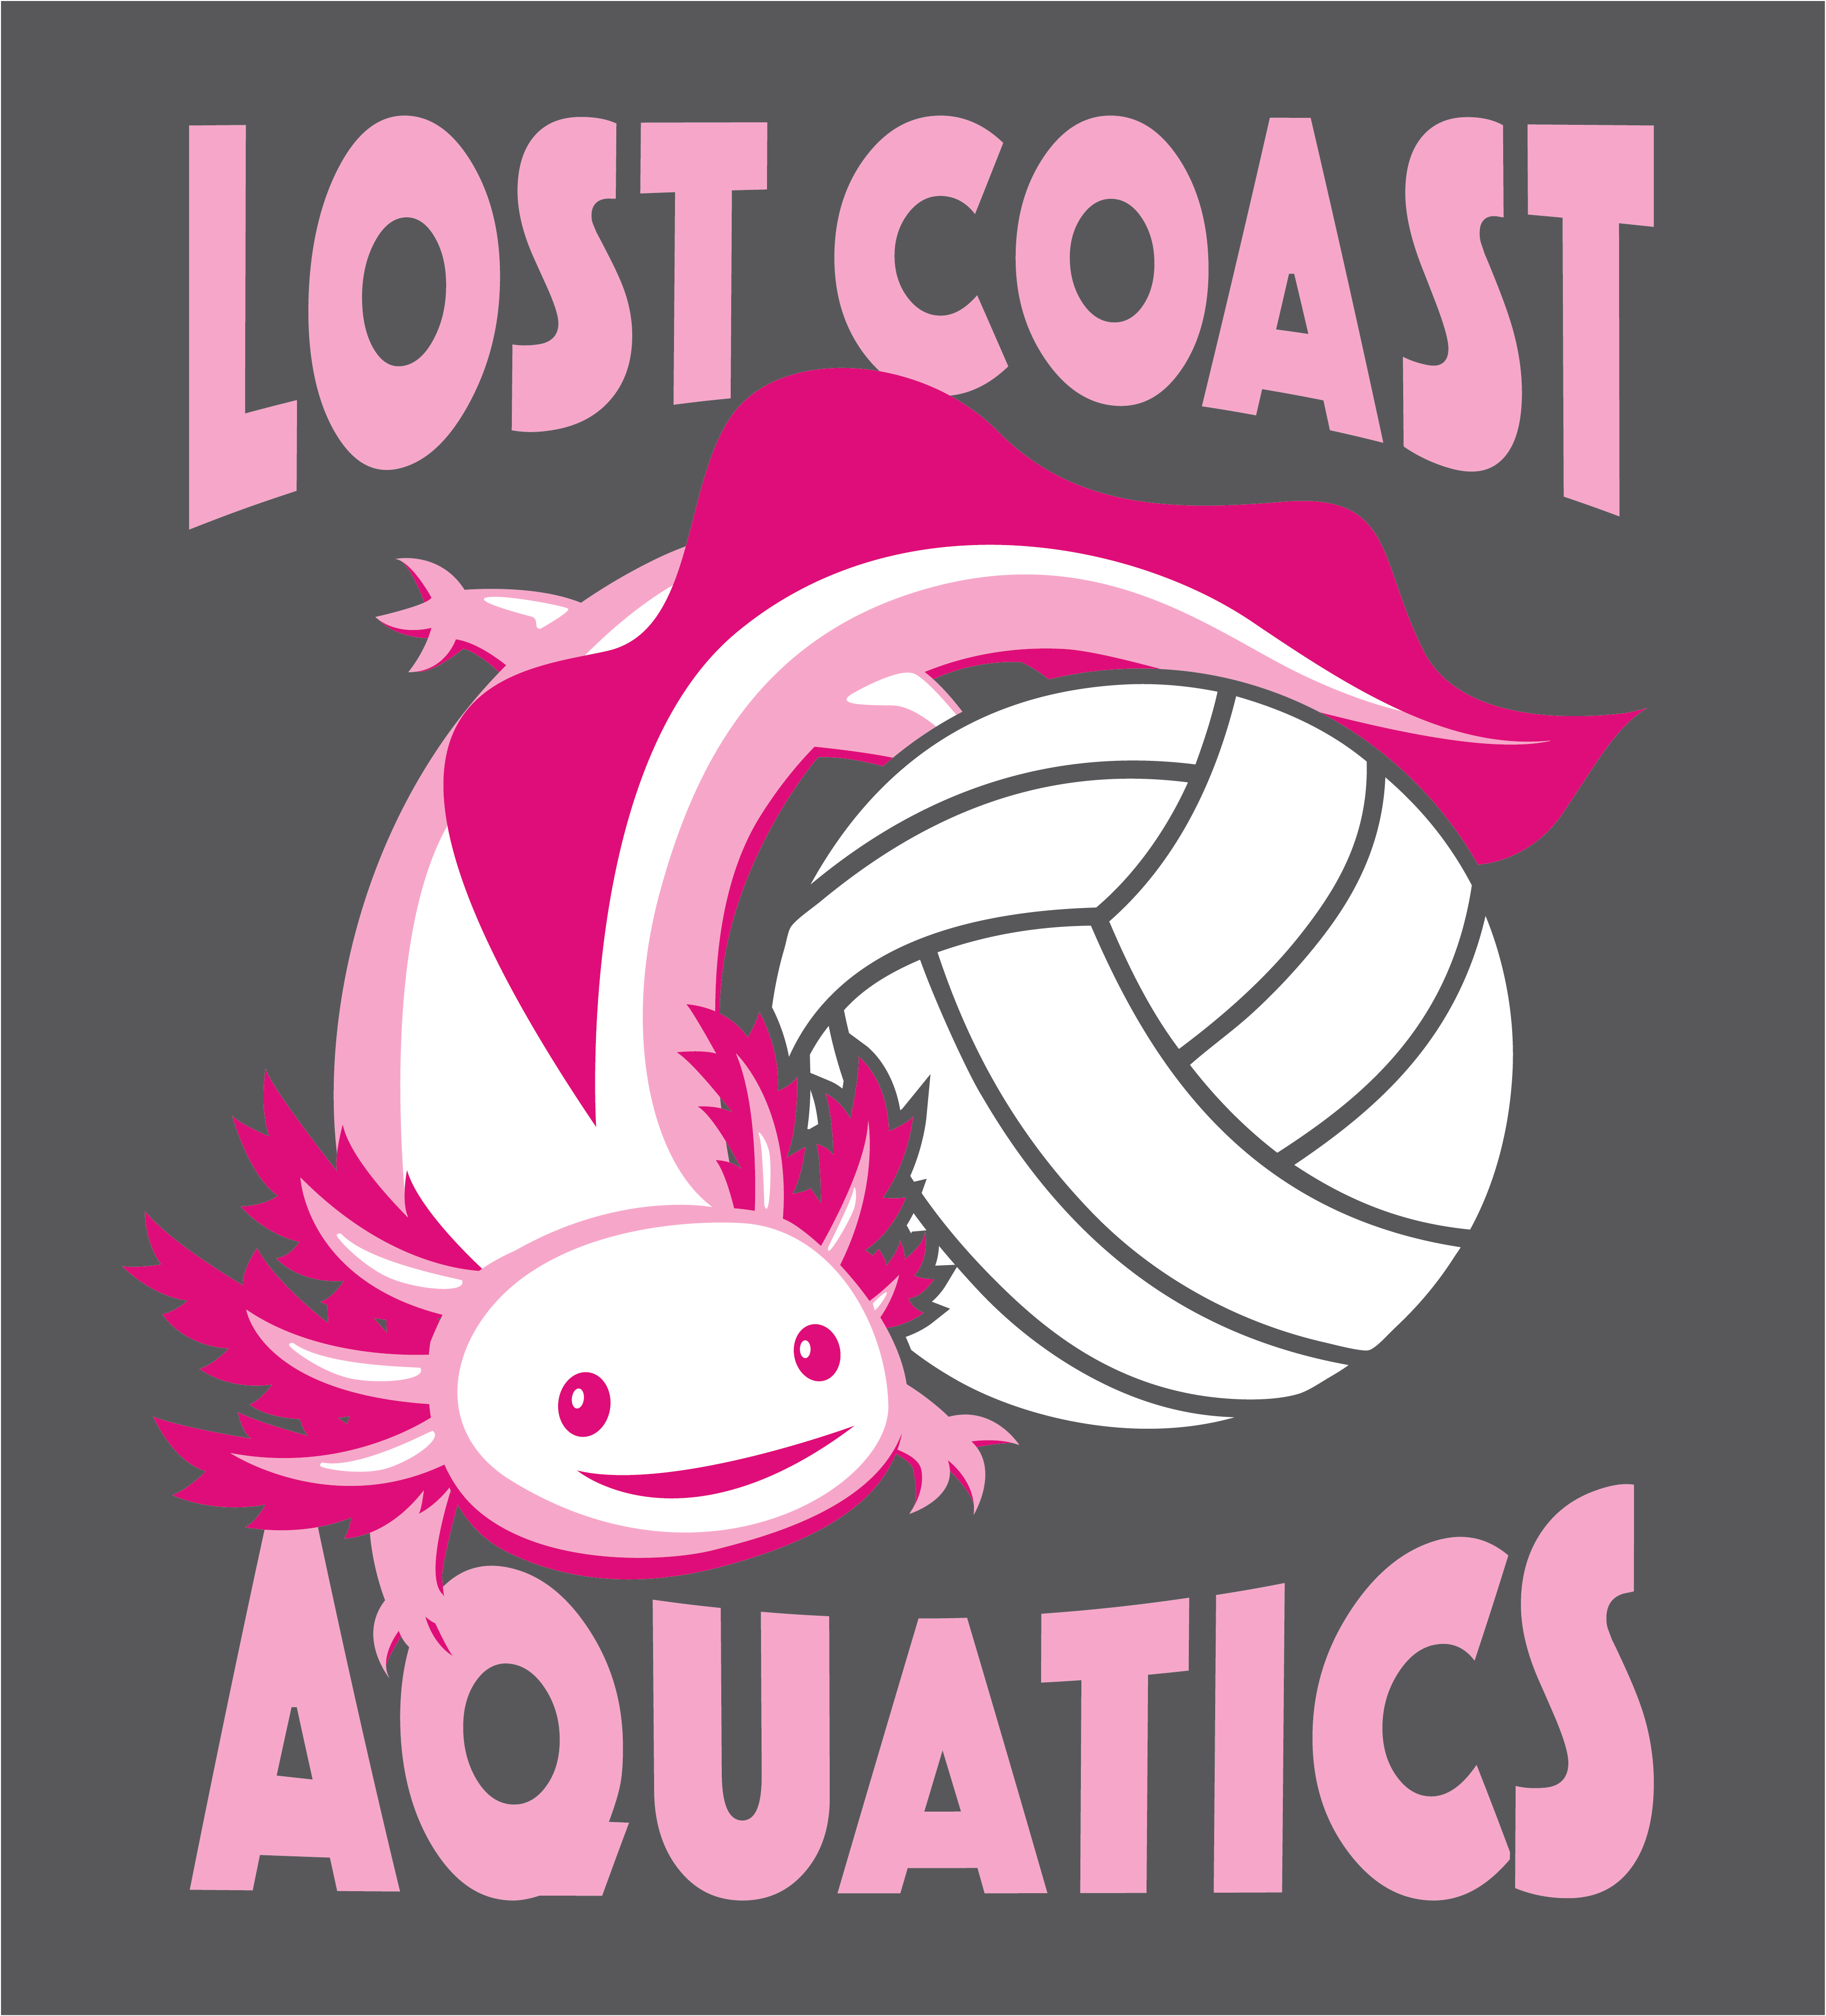 Lost Coast Aquatics Foundation